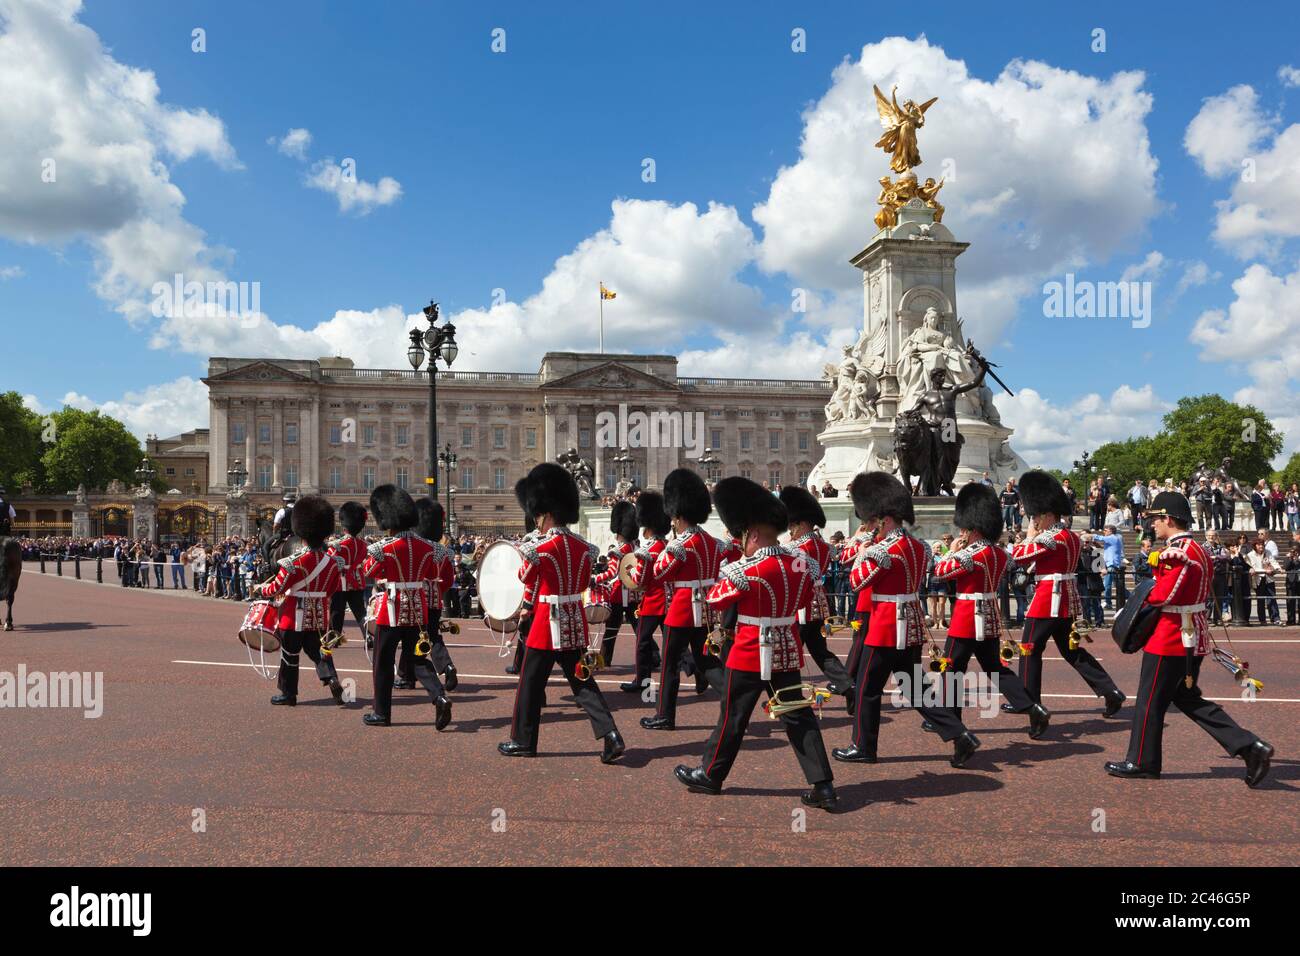 Bande des gardes passant devant Buckingham Palace et le Queen Victoria Monument lors de la relève de la garde, Londres, Angleterre, Royaume-Uni Banque D'Images